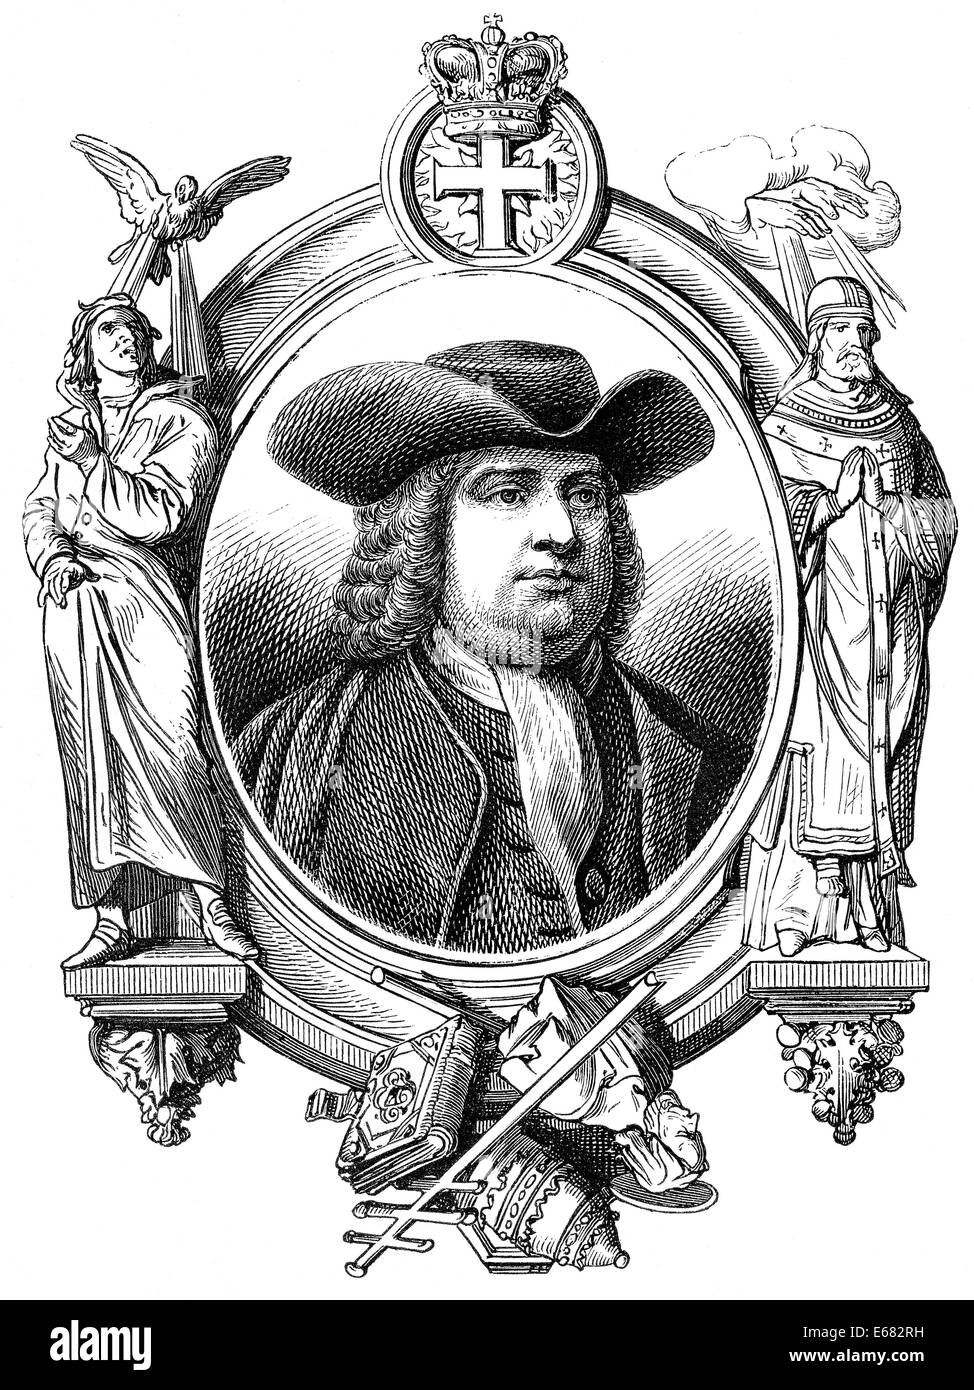 William Penn, 1644 - 1718, fondatore della colonia della Pennsylvania, Foto Stock